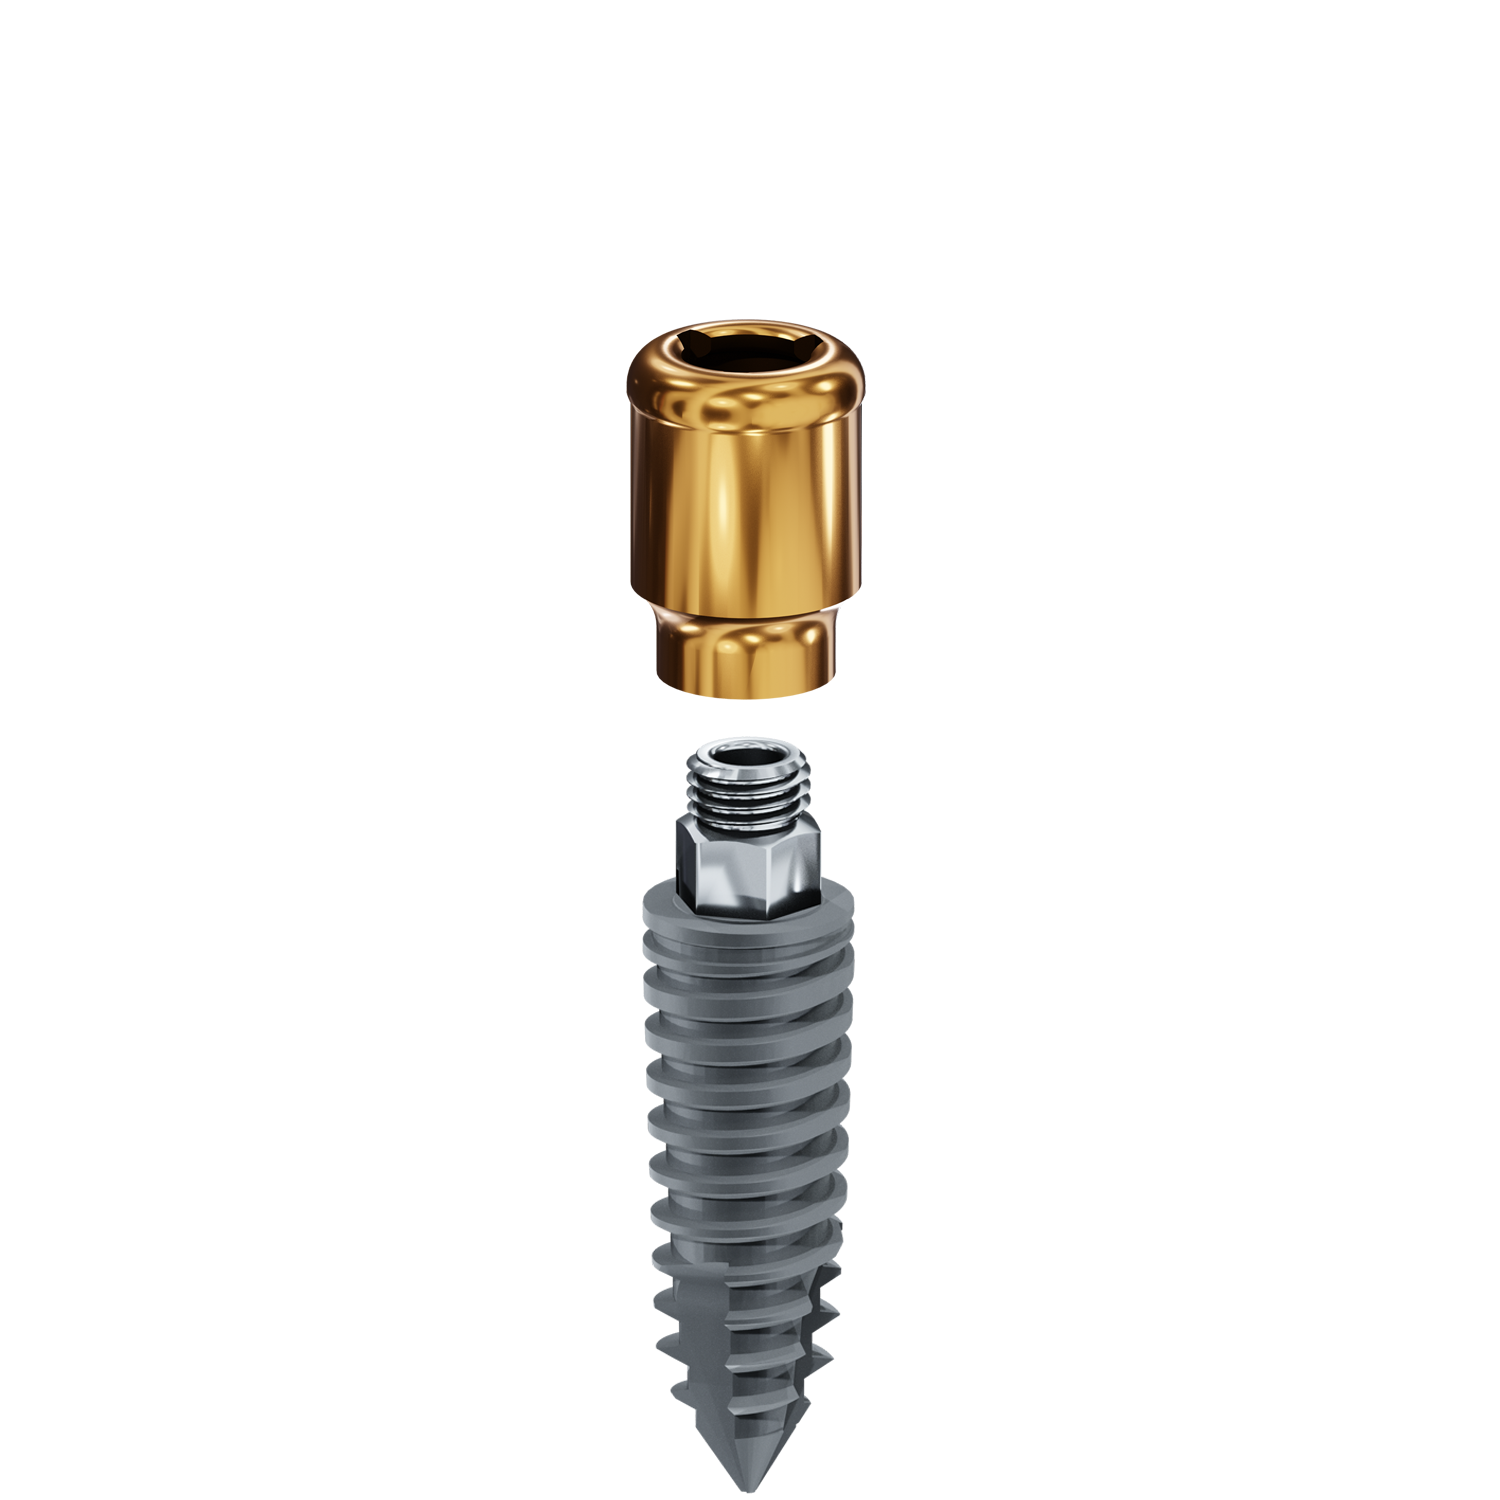 LODI Implant 3.4mm x 10mm, 4.0mm Cuff